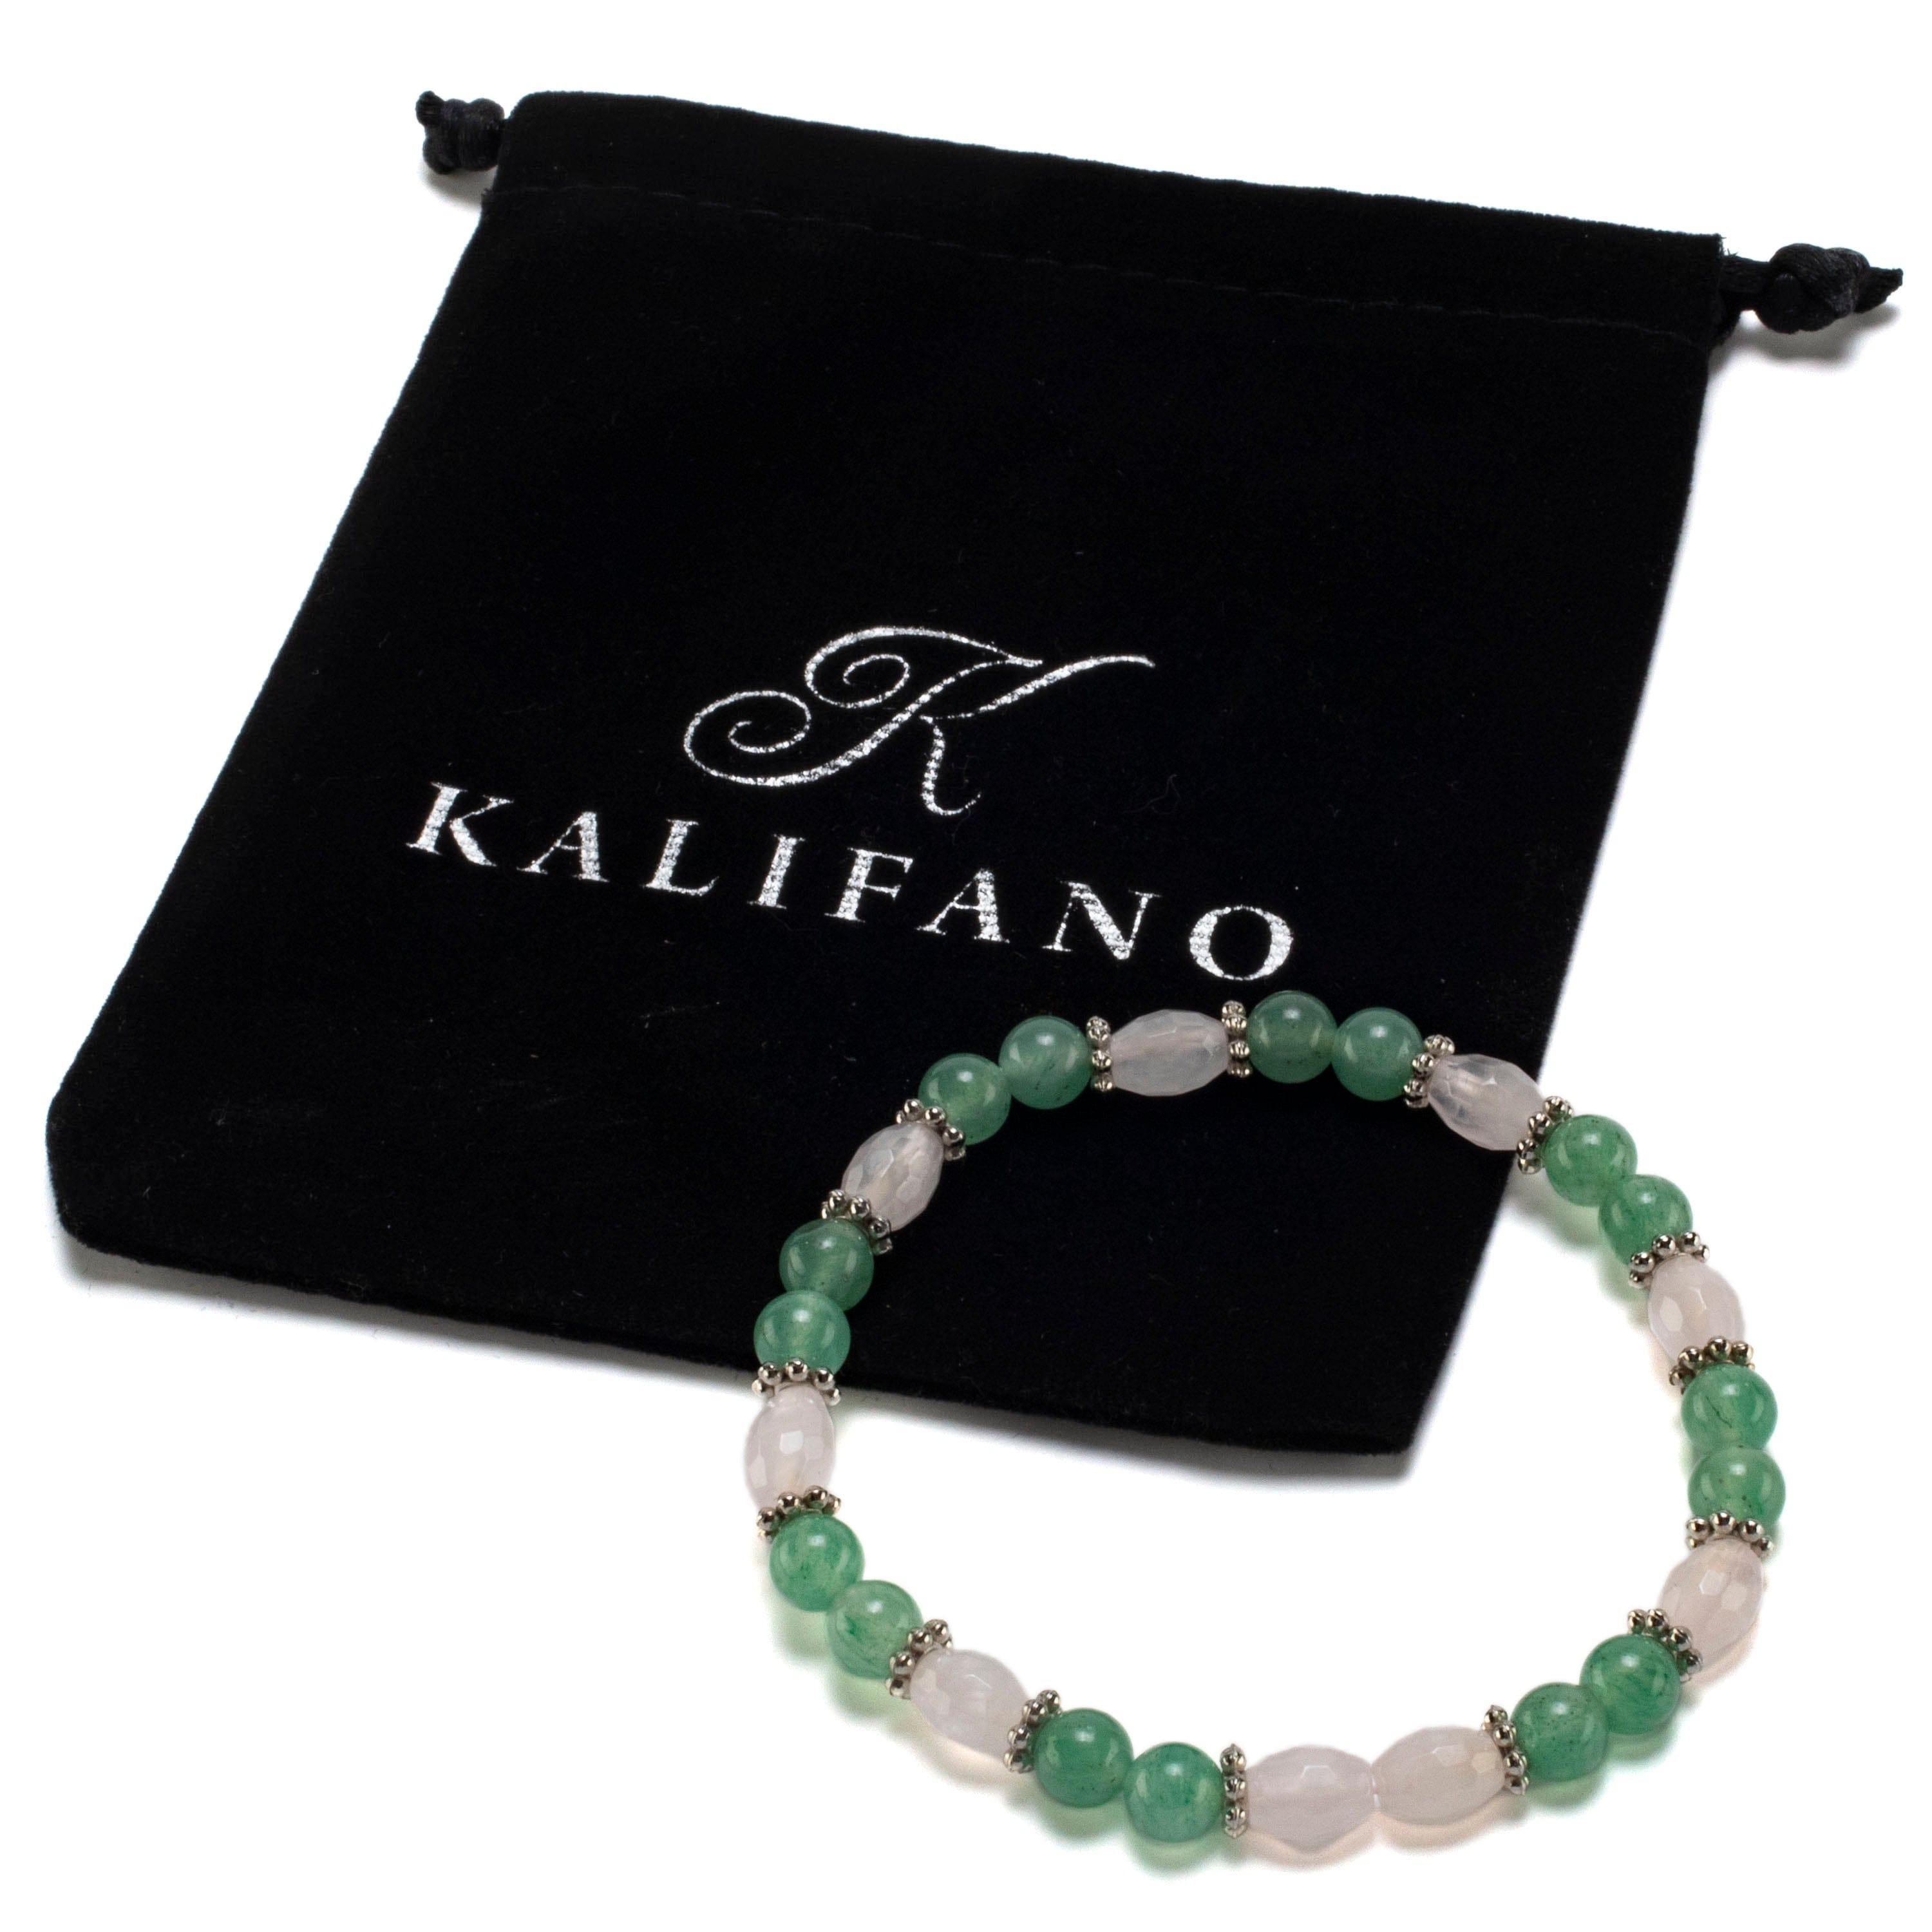 Kalifano Gemstone Bracelets Oval Rose Quartz and Round Aventurine with Crystal Accent Beads Gemstone Elastic Bracelet BLUE-BGP-013